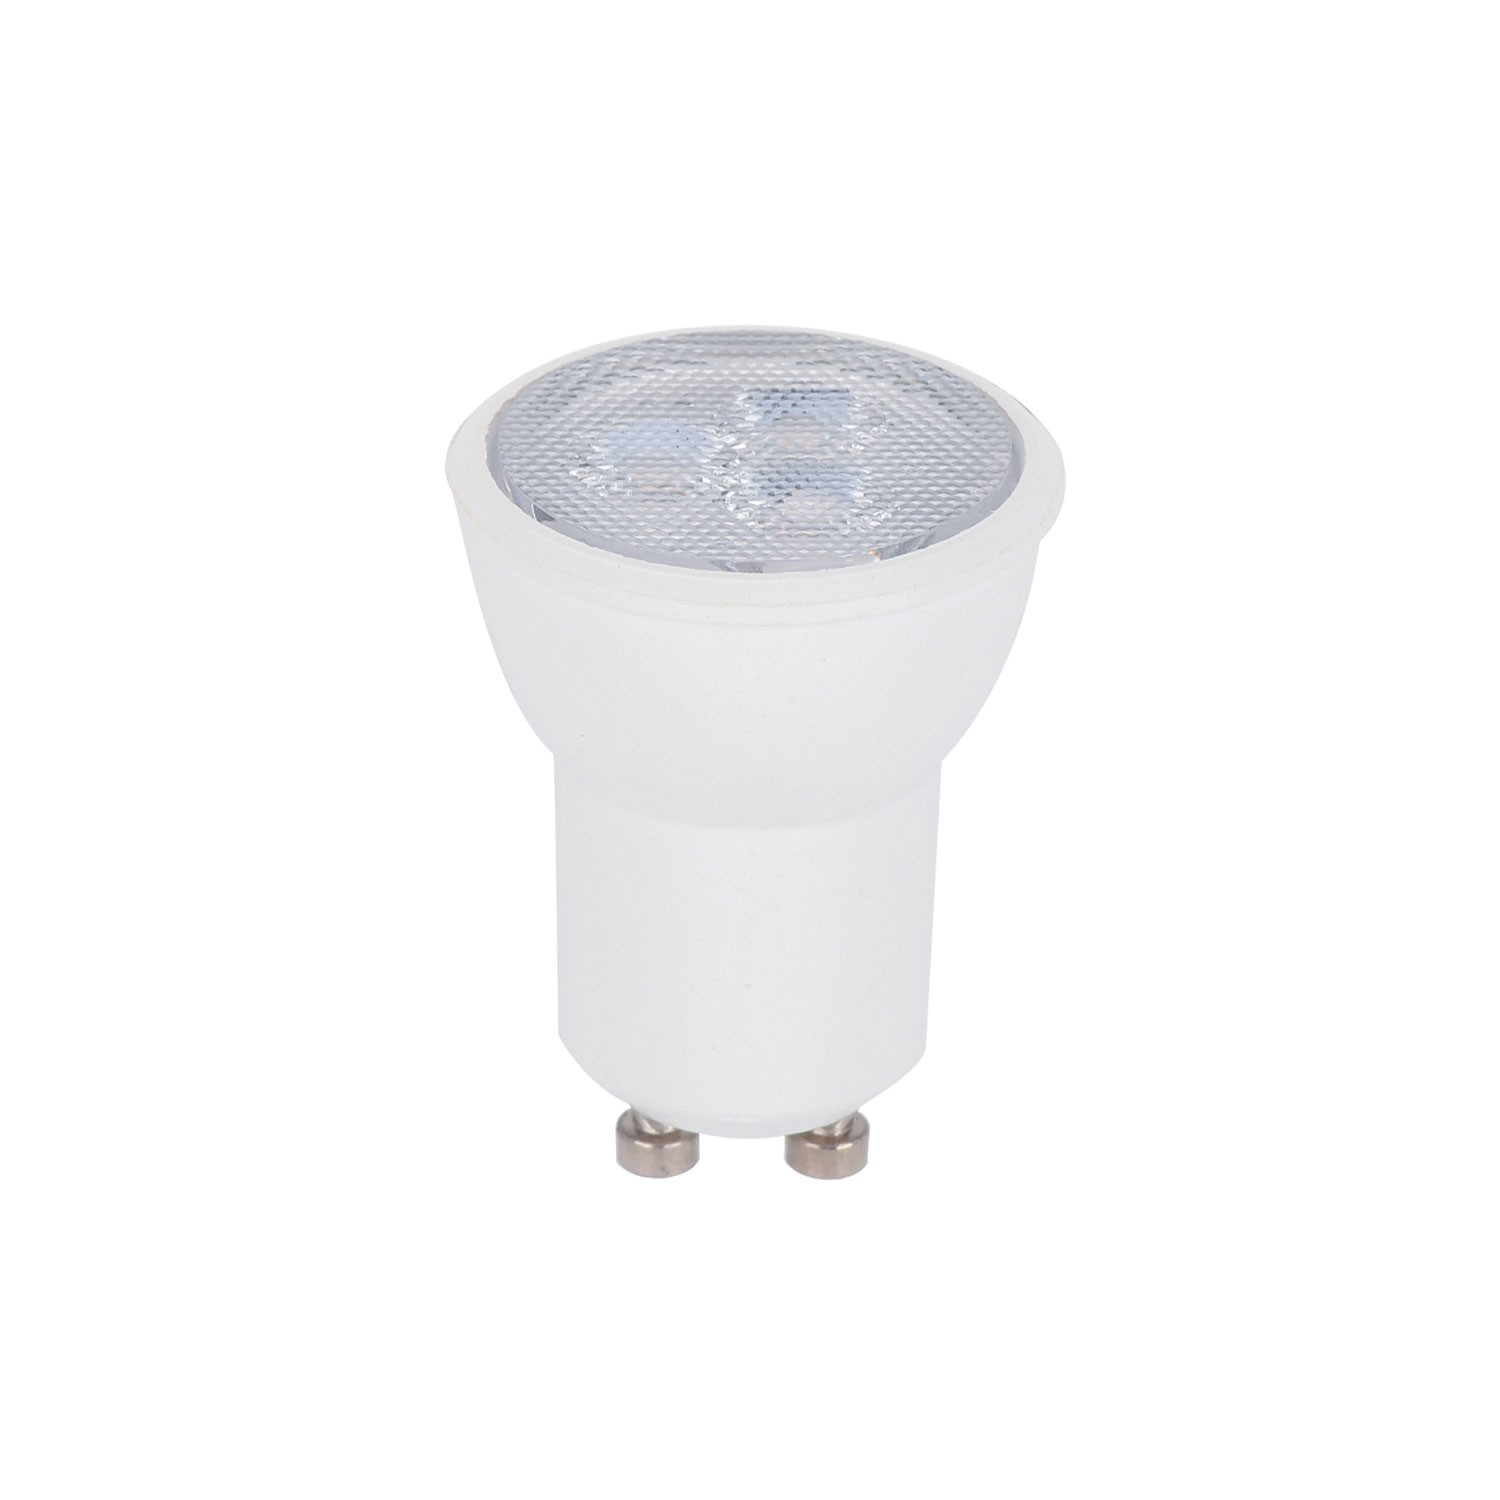 Lampe Spostaluce Flex 30 réglable avec spot GU1d0